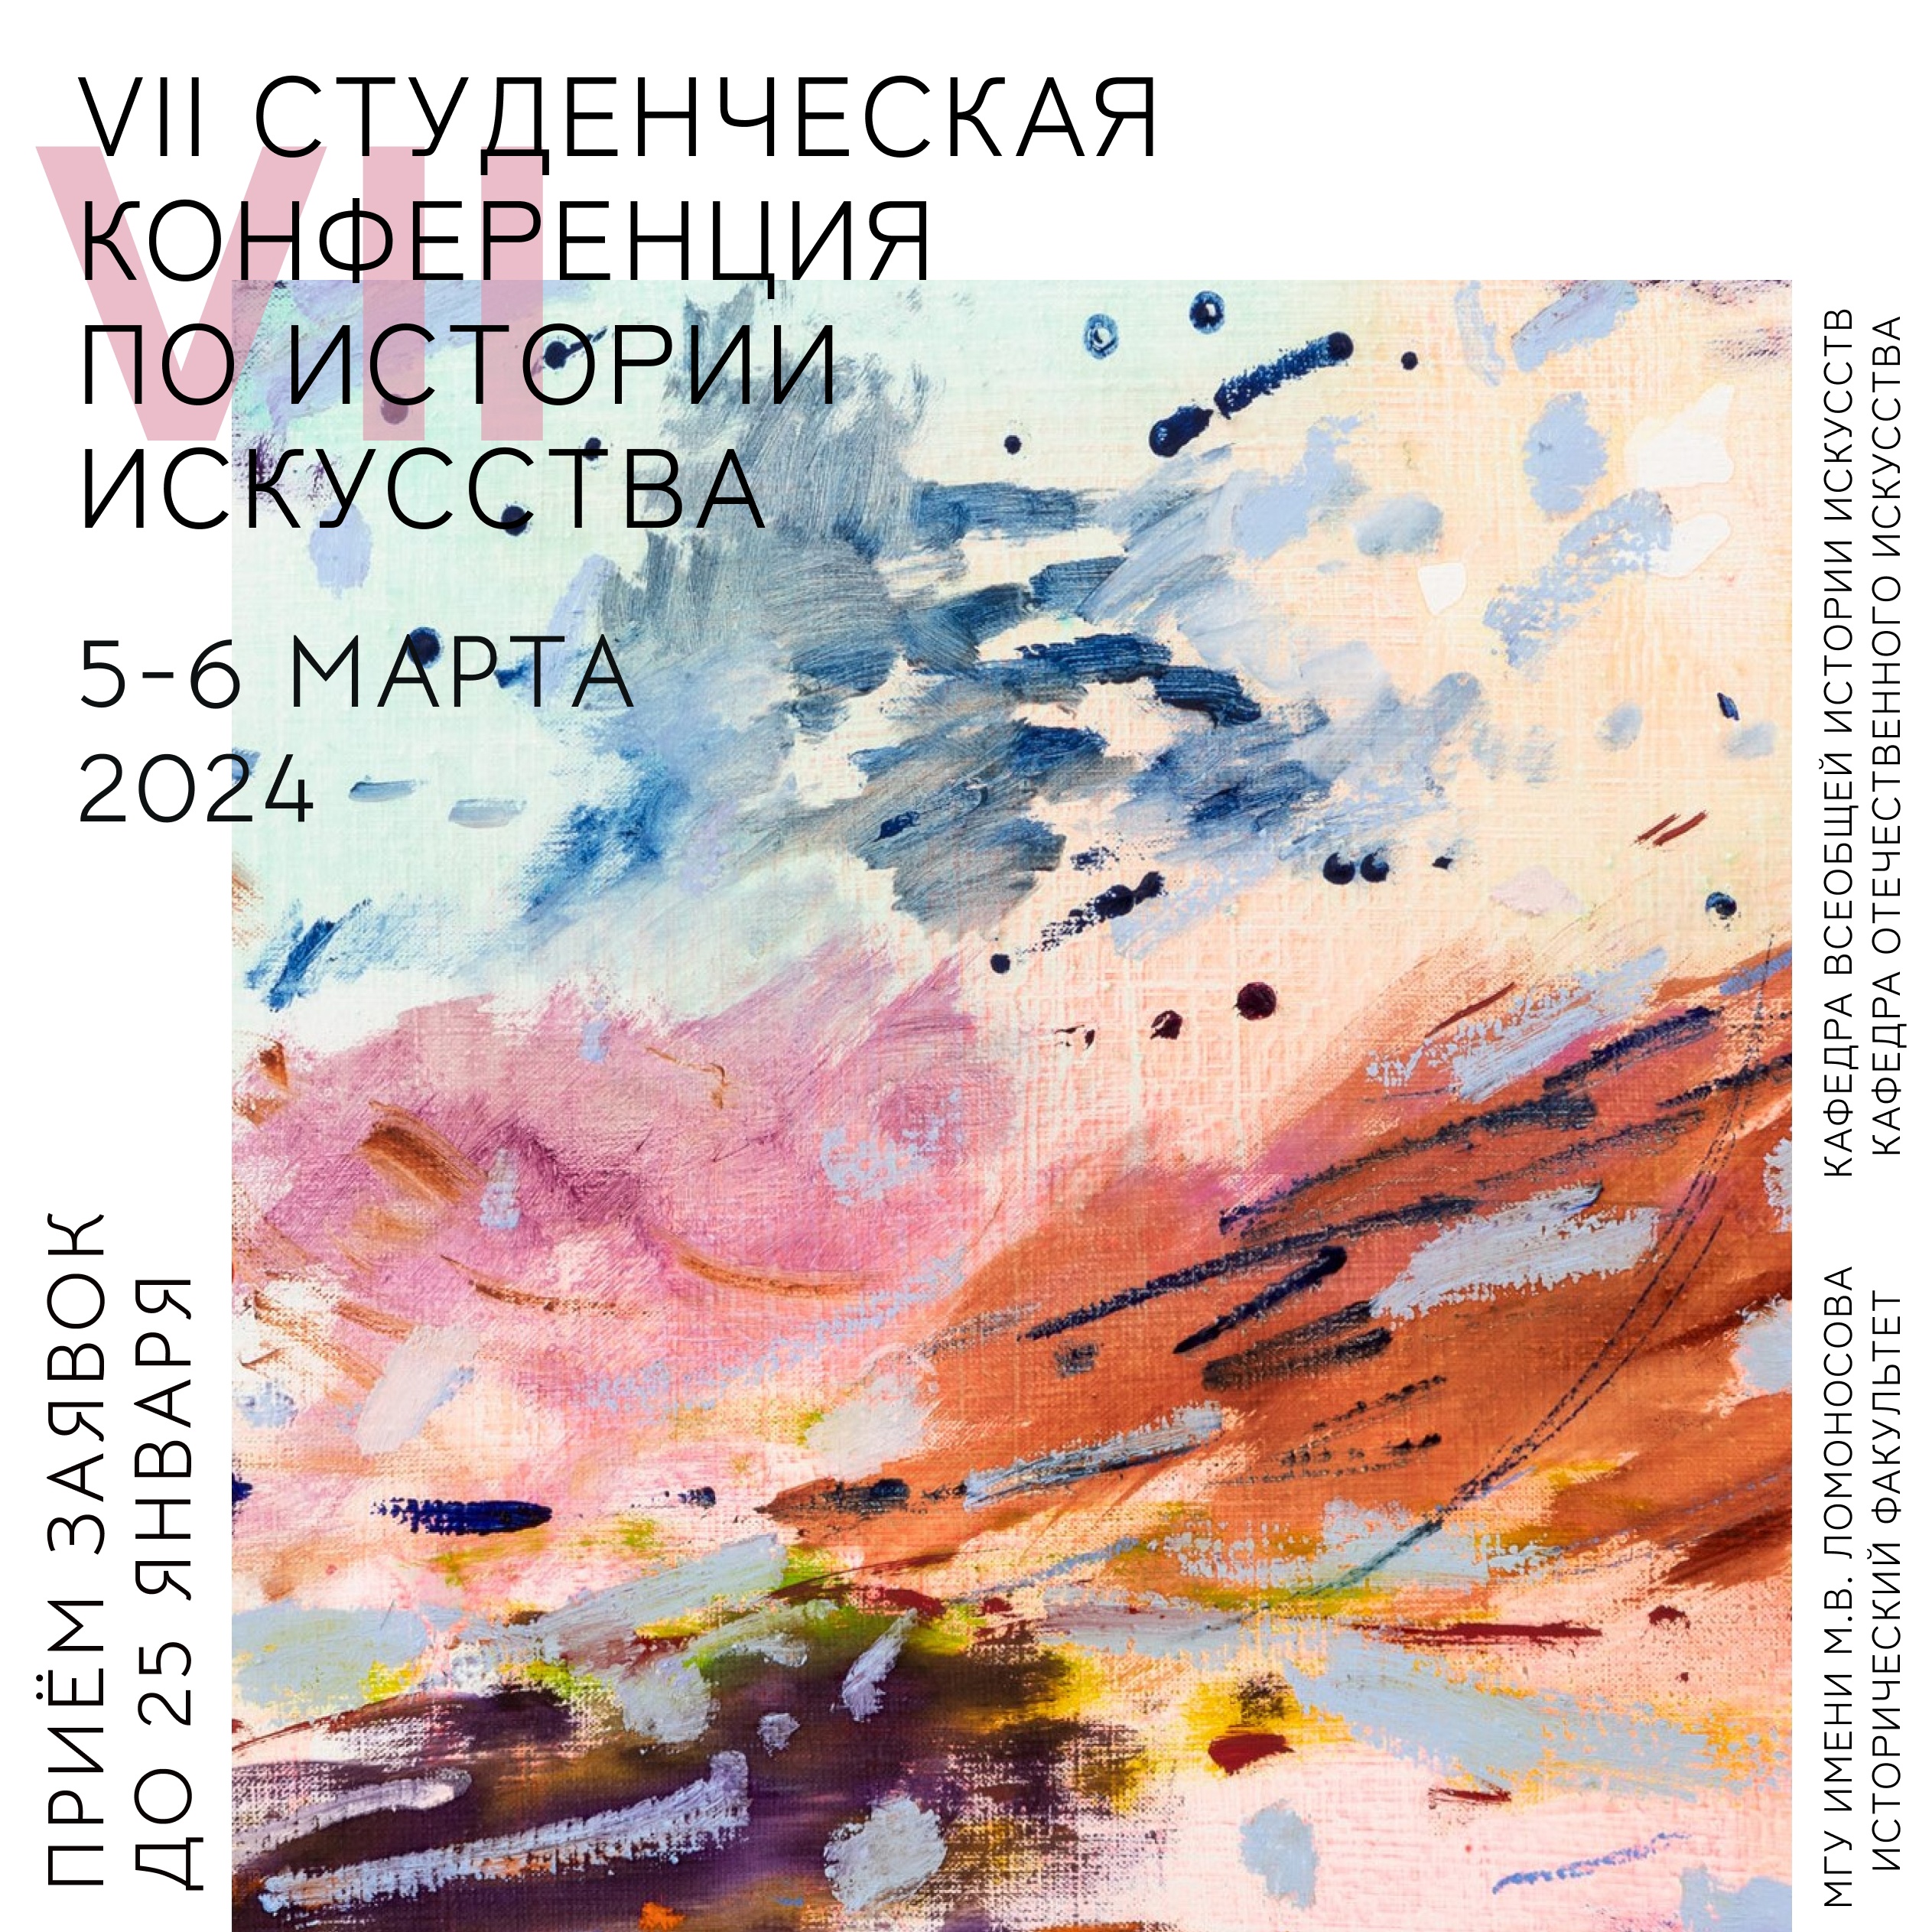 VII Студенческая конференция по истории искусства